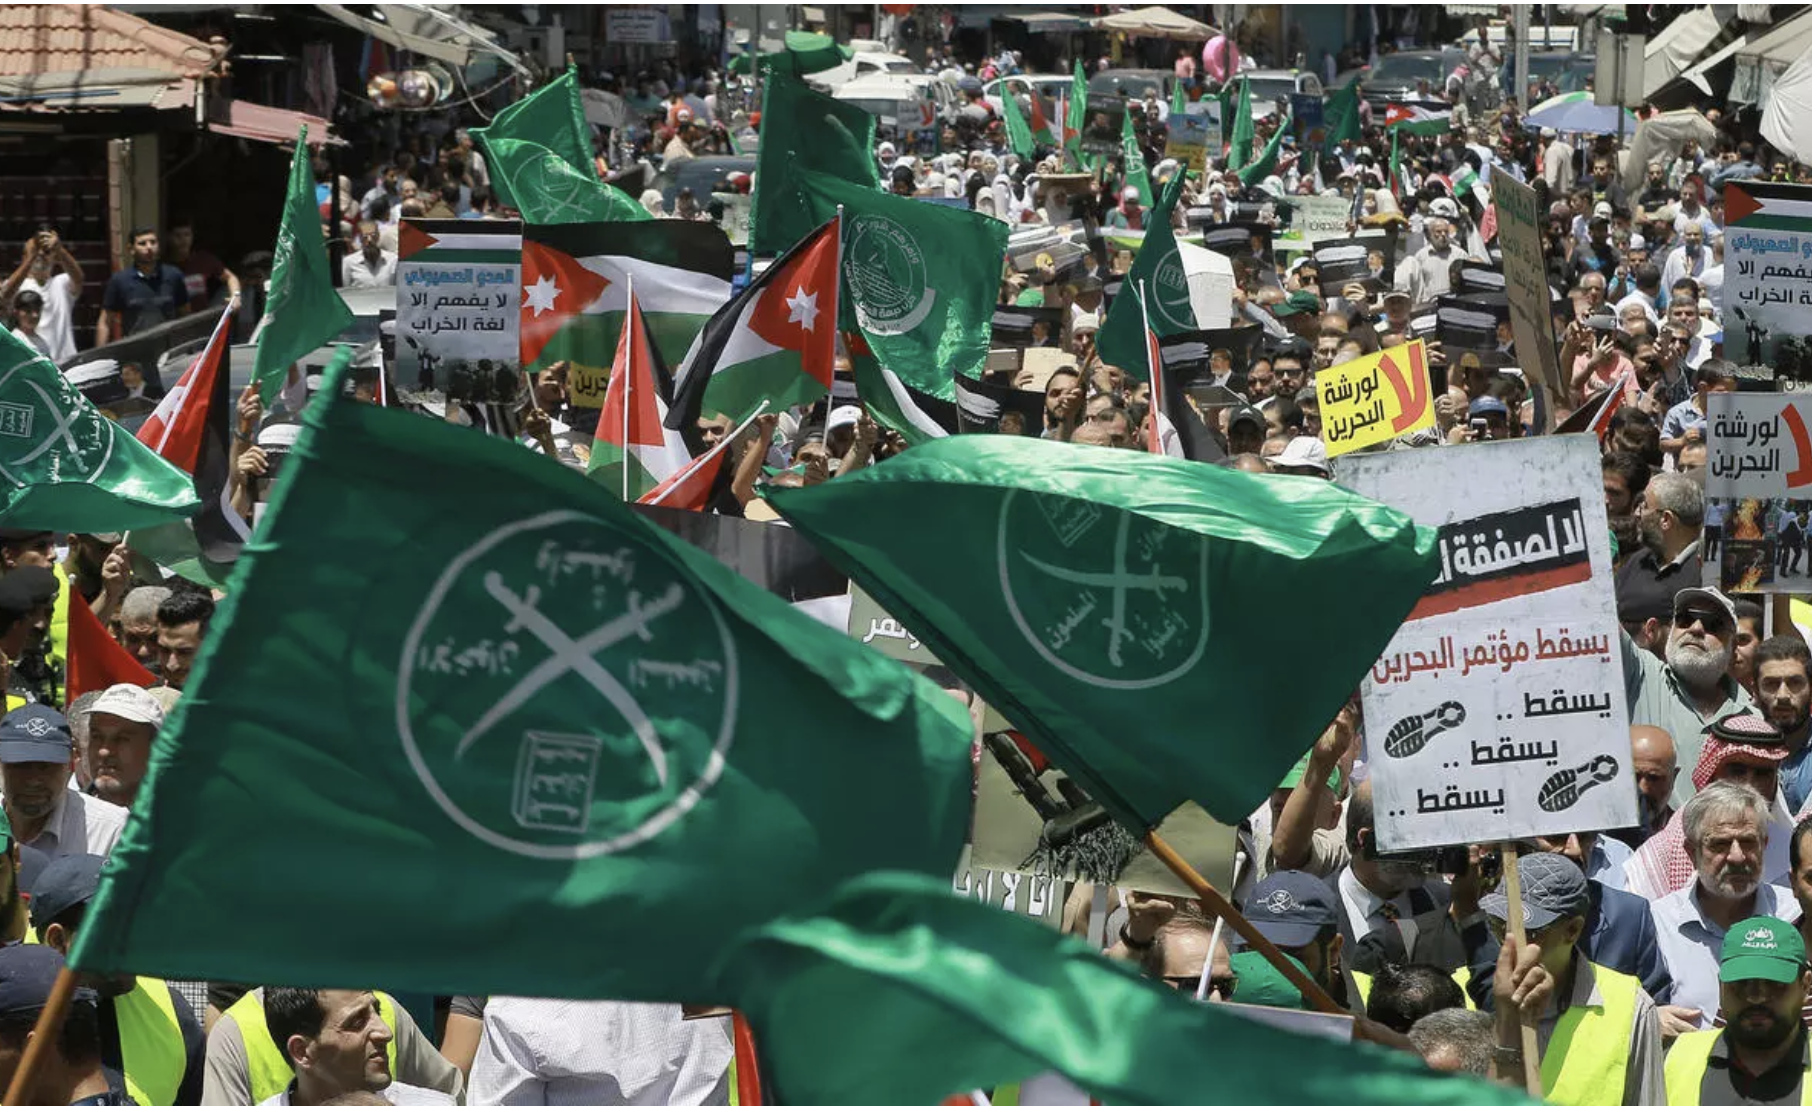 صورة من تظاهرة من تنظيم الإخوان المسلمين في الأردن